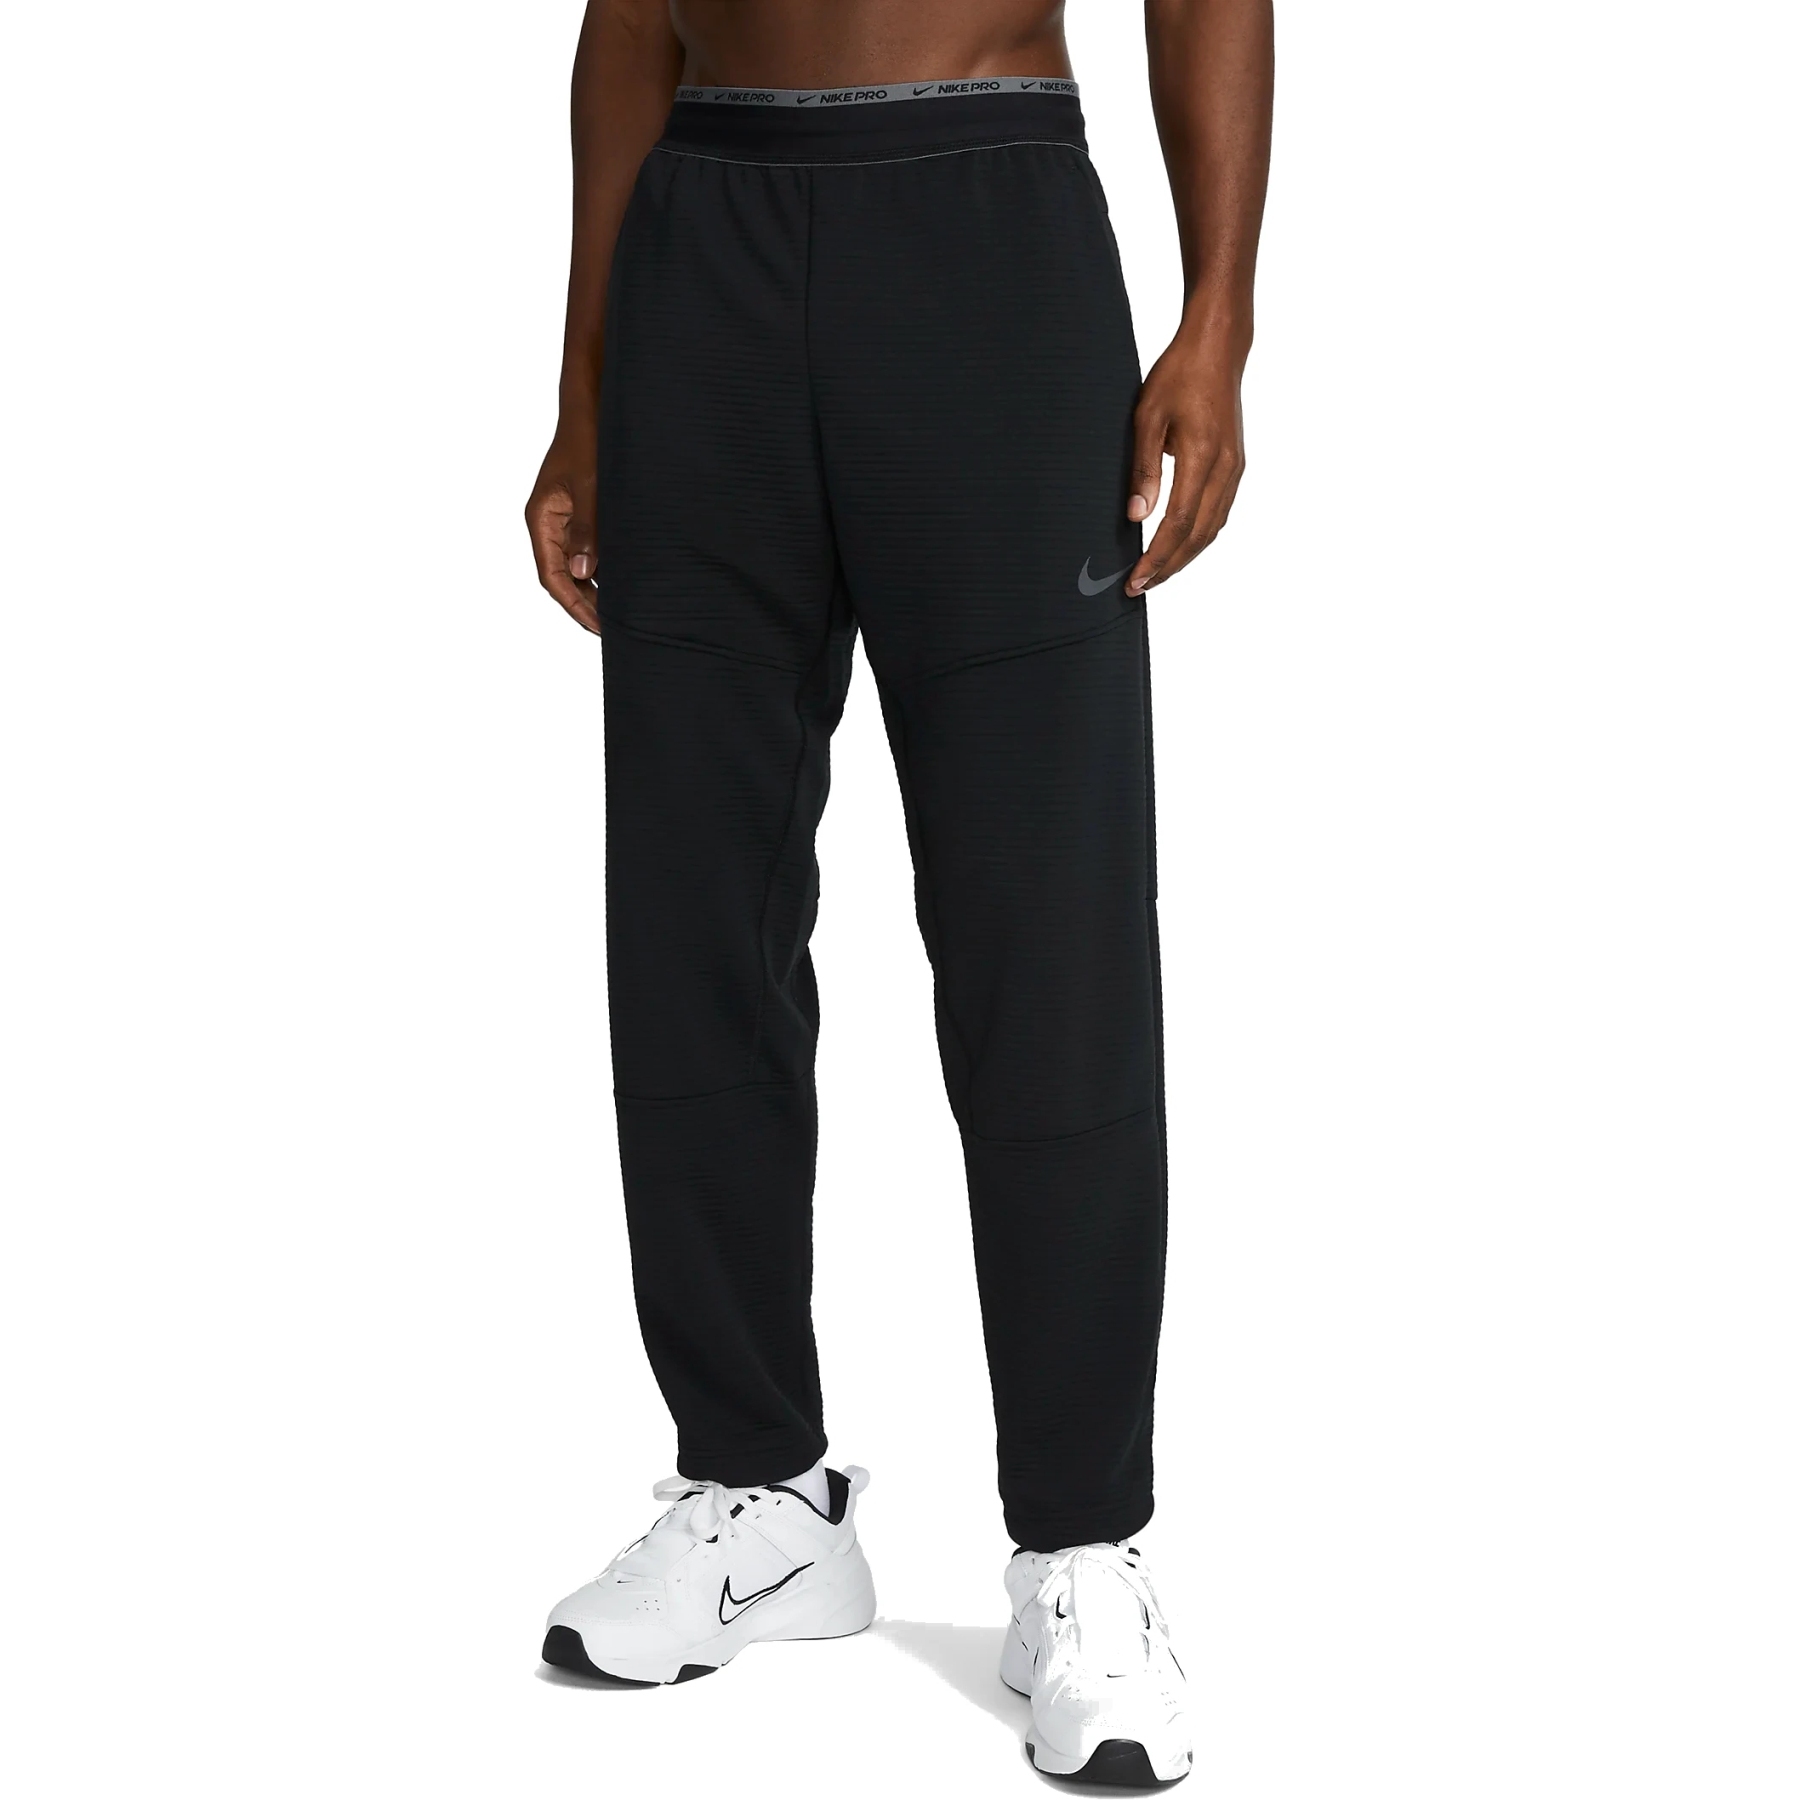 Immagine prodotto da Nike Pantaloni da Jogging Uomo - Pro Fleece Fitness - black/iron grey DV9910-010